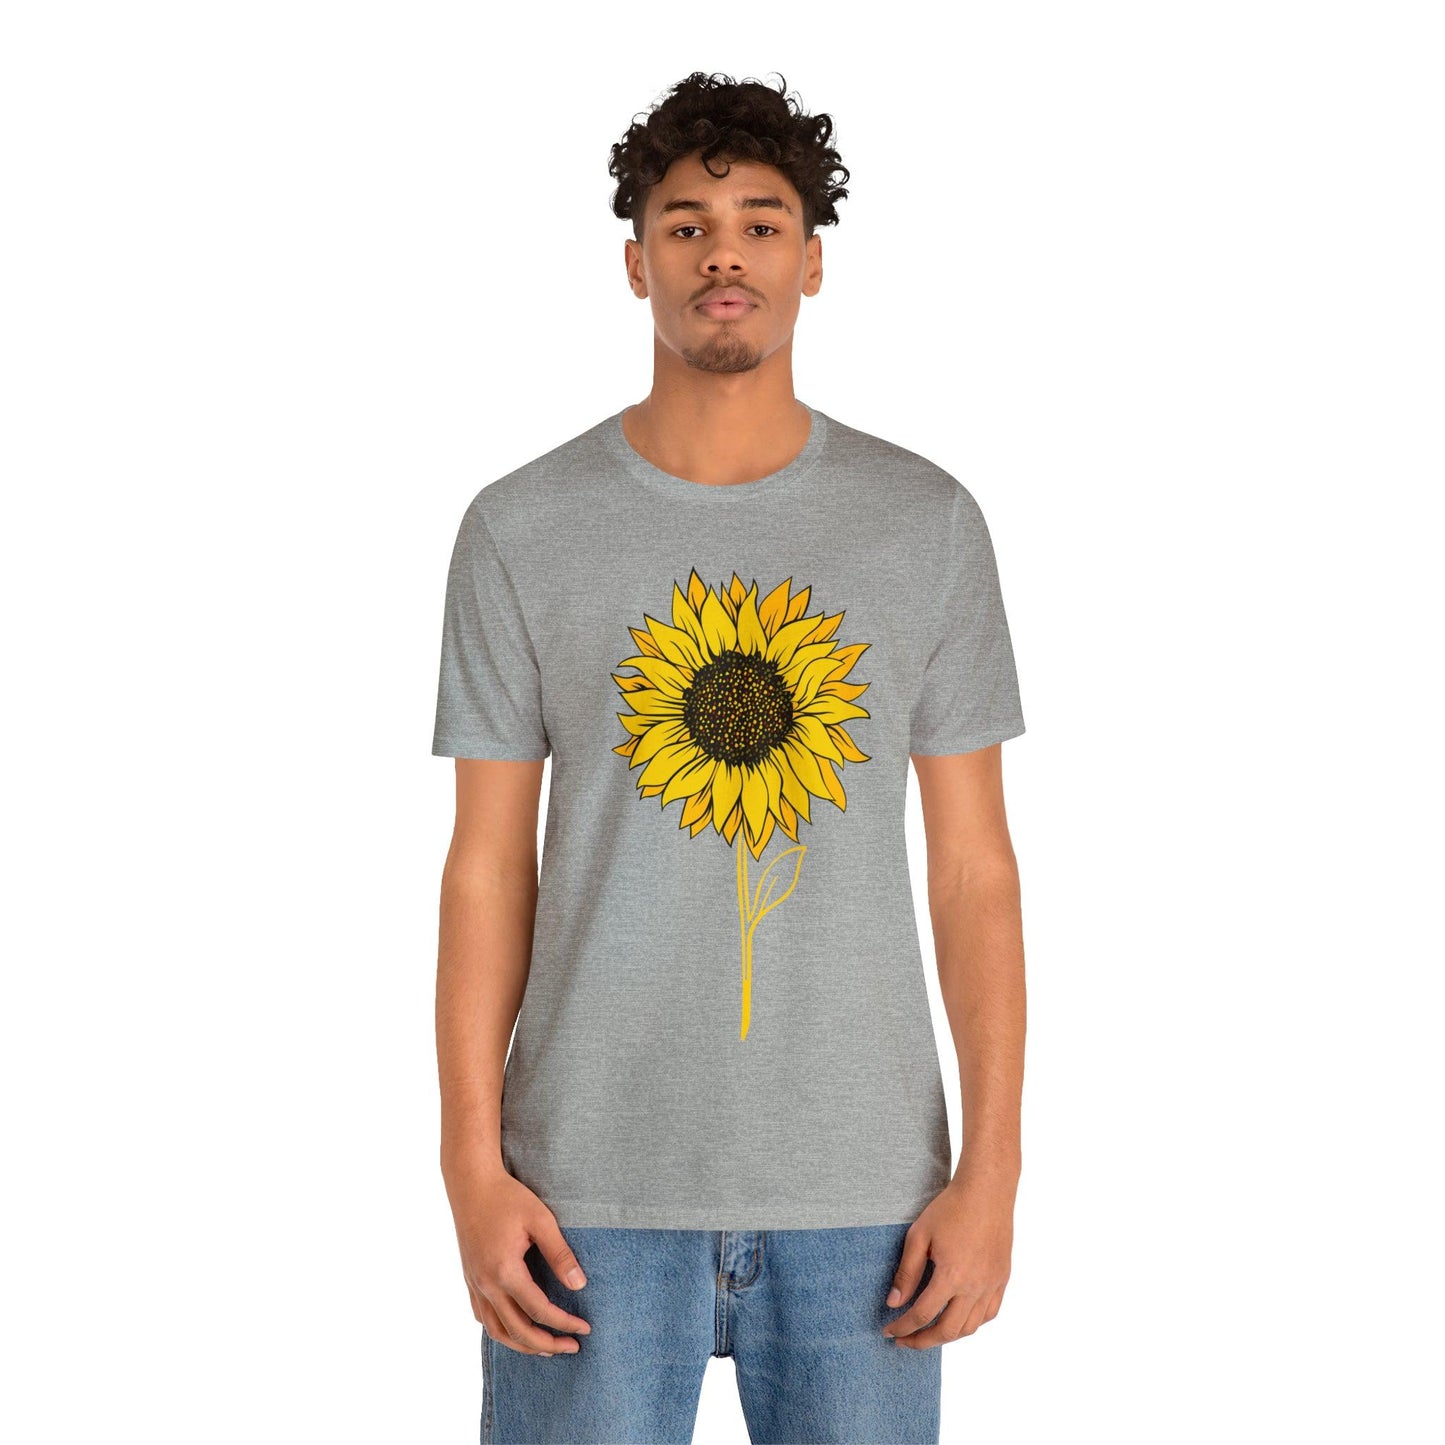 Sunflower Shirt, Floral Tee Shirt, Flower Shirt, Garden Shirt, Womens Fall Summer Shirt Sunshine Tee, Gift for Gardener, Nature love T shirt